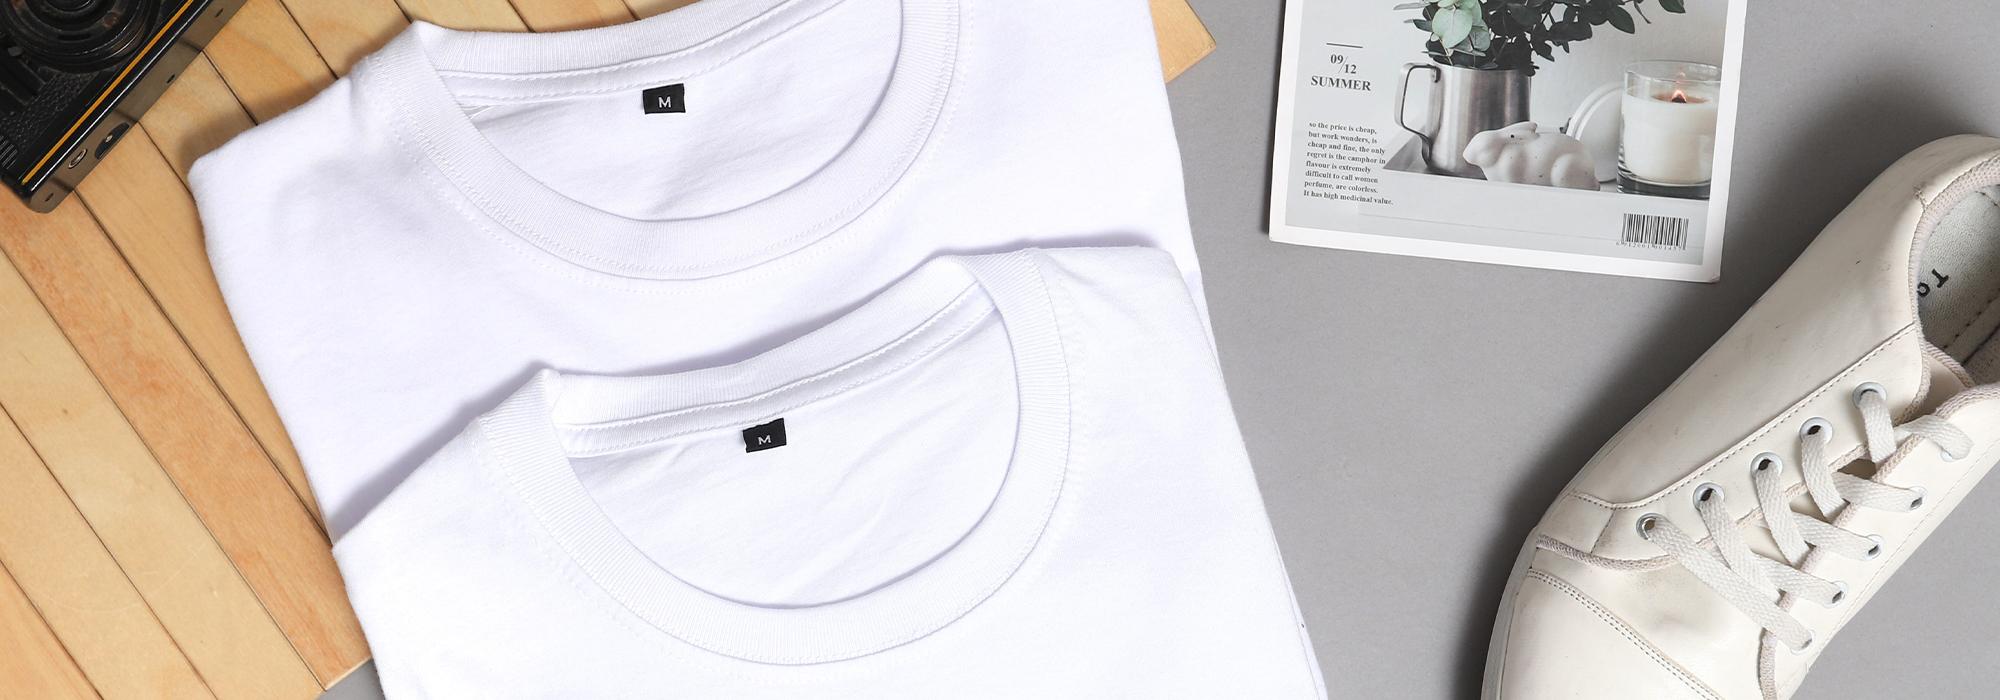 TopTex-Leitfaden: Auswahl des passenden T-Shirts für die Veredelung.